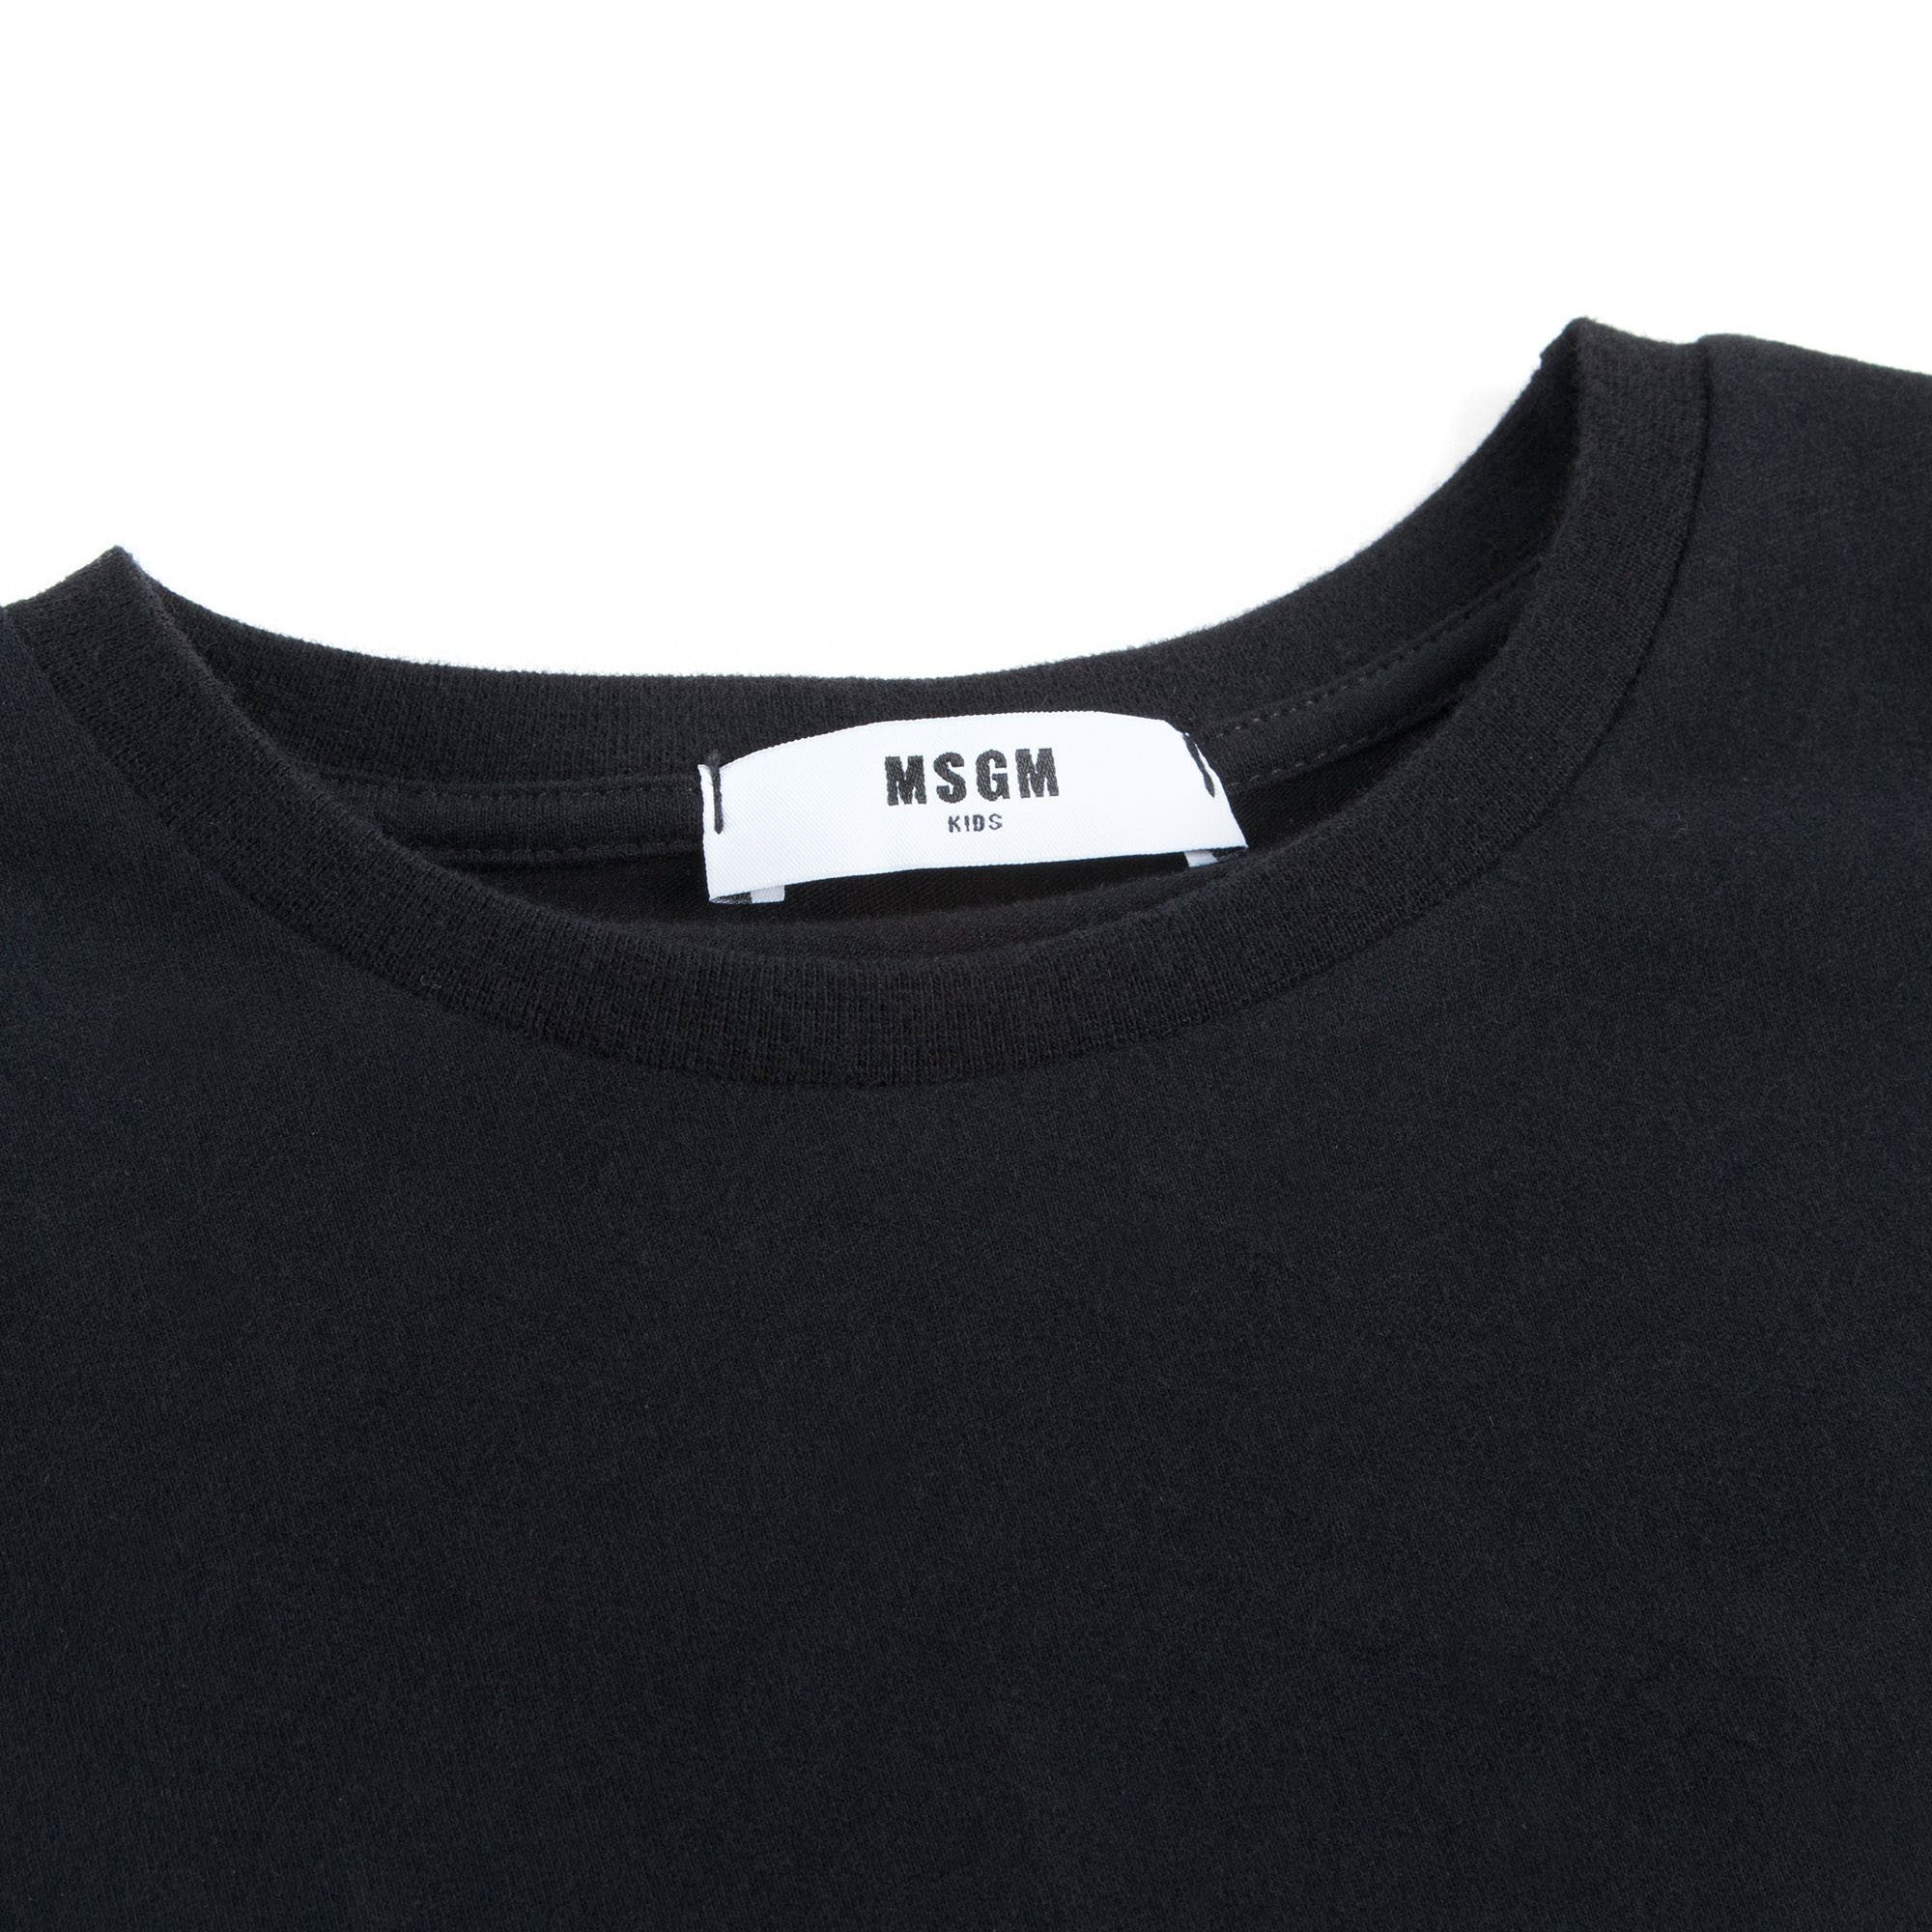 Girls Black Cotton Jersey T-shirt With Cortex Trim